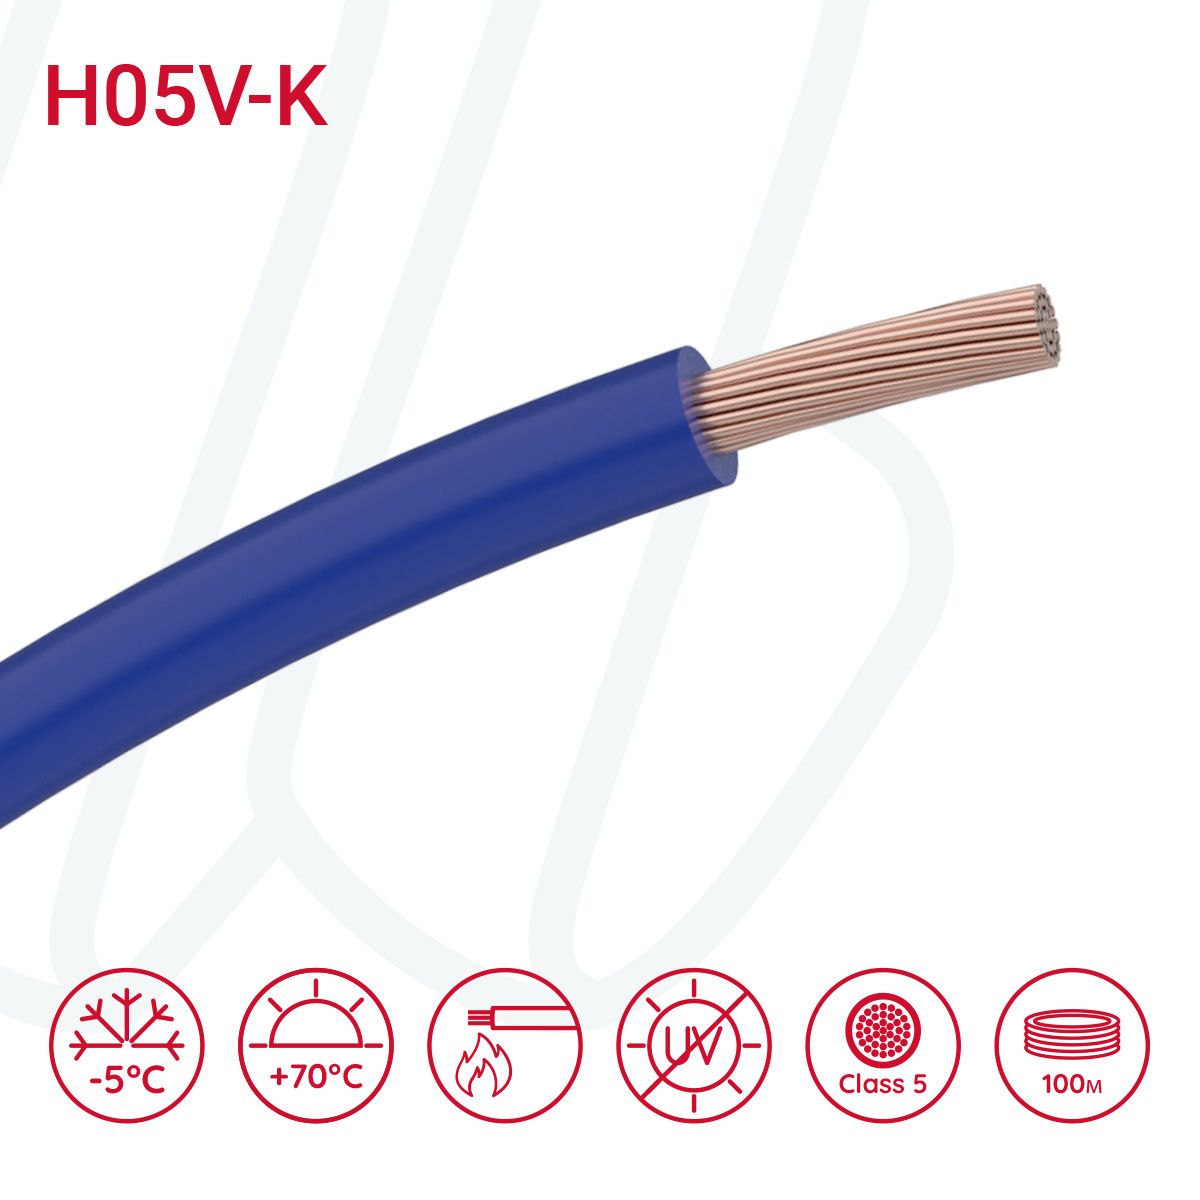 Провід монтажний гнучкий H05V-K 0.75 мм² ультрамариновий синій RAL 5002, 01, 0.75